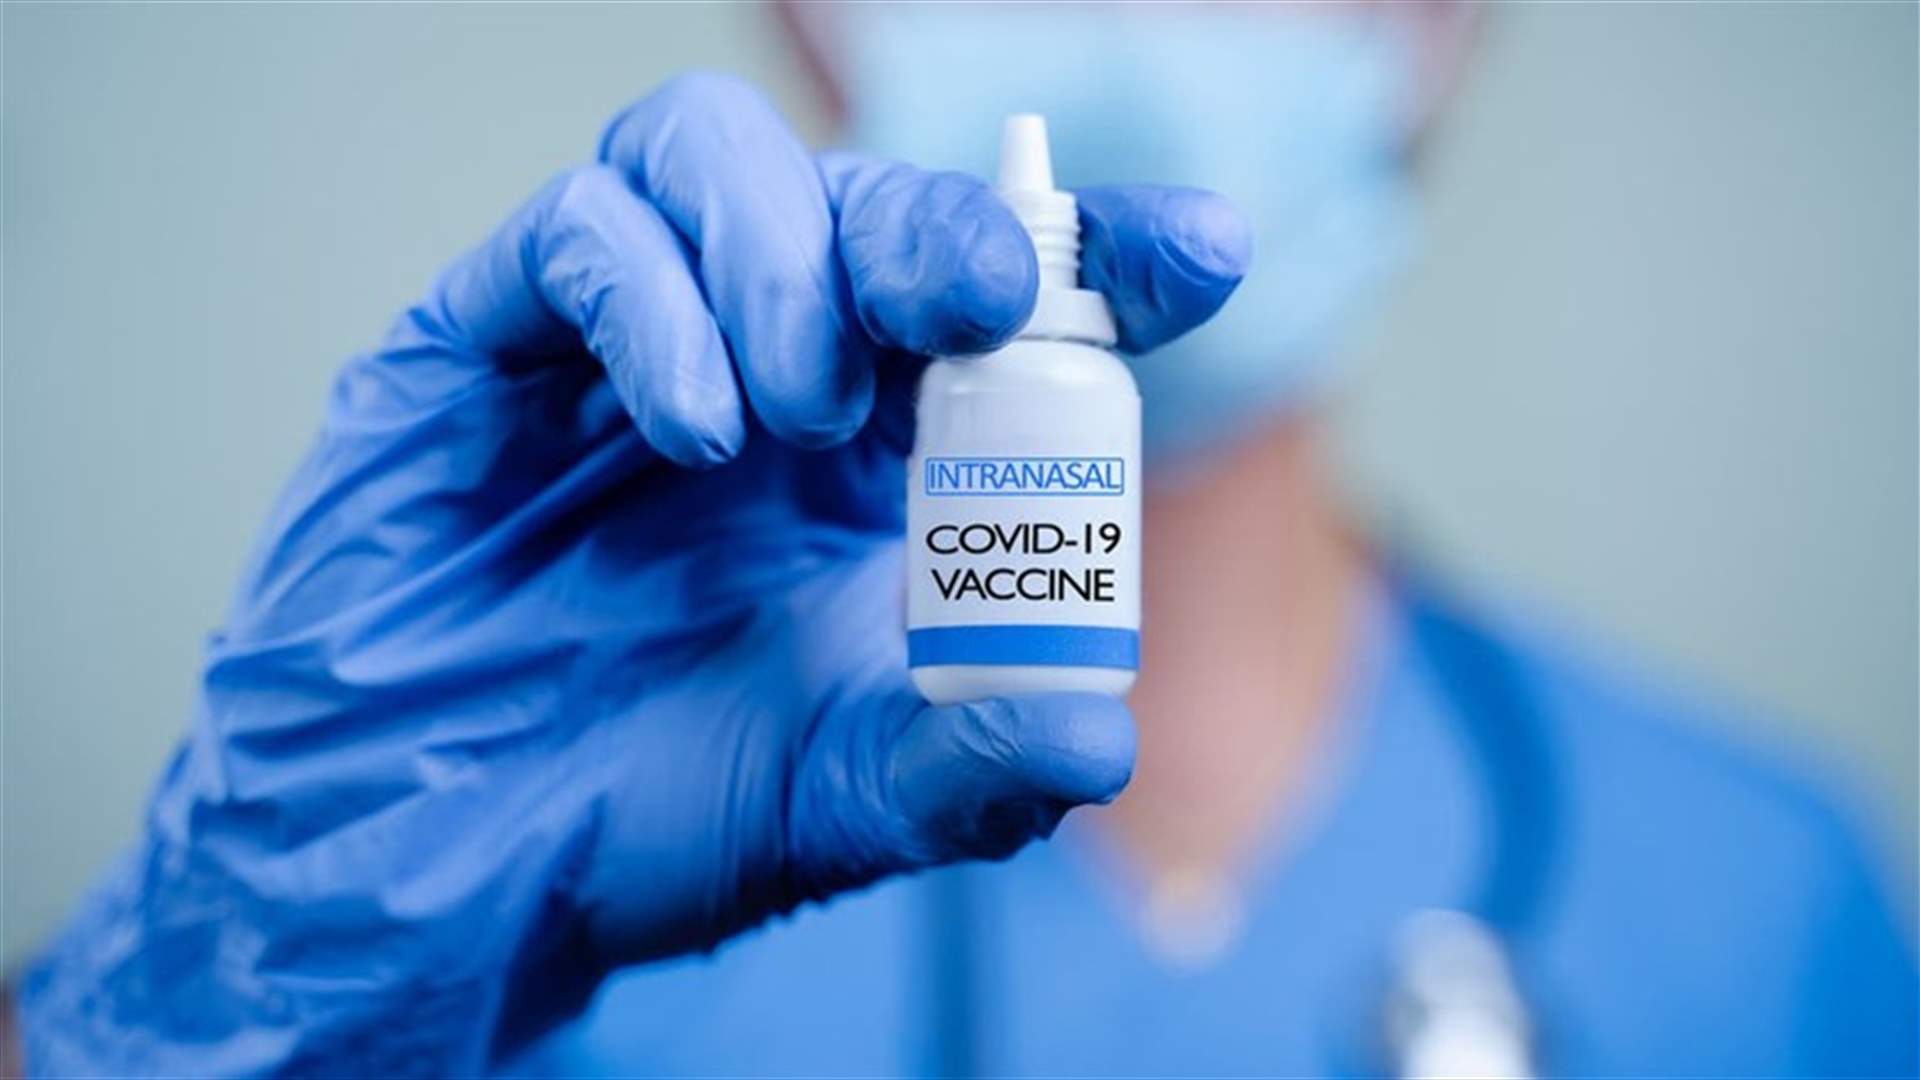 شركة صينية تعتزم بدء تجربة كبيرة للقاح مضاد لكوفيد-19 يؤخذ عن طريق الأنف